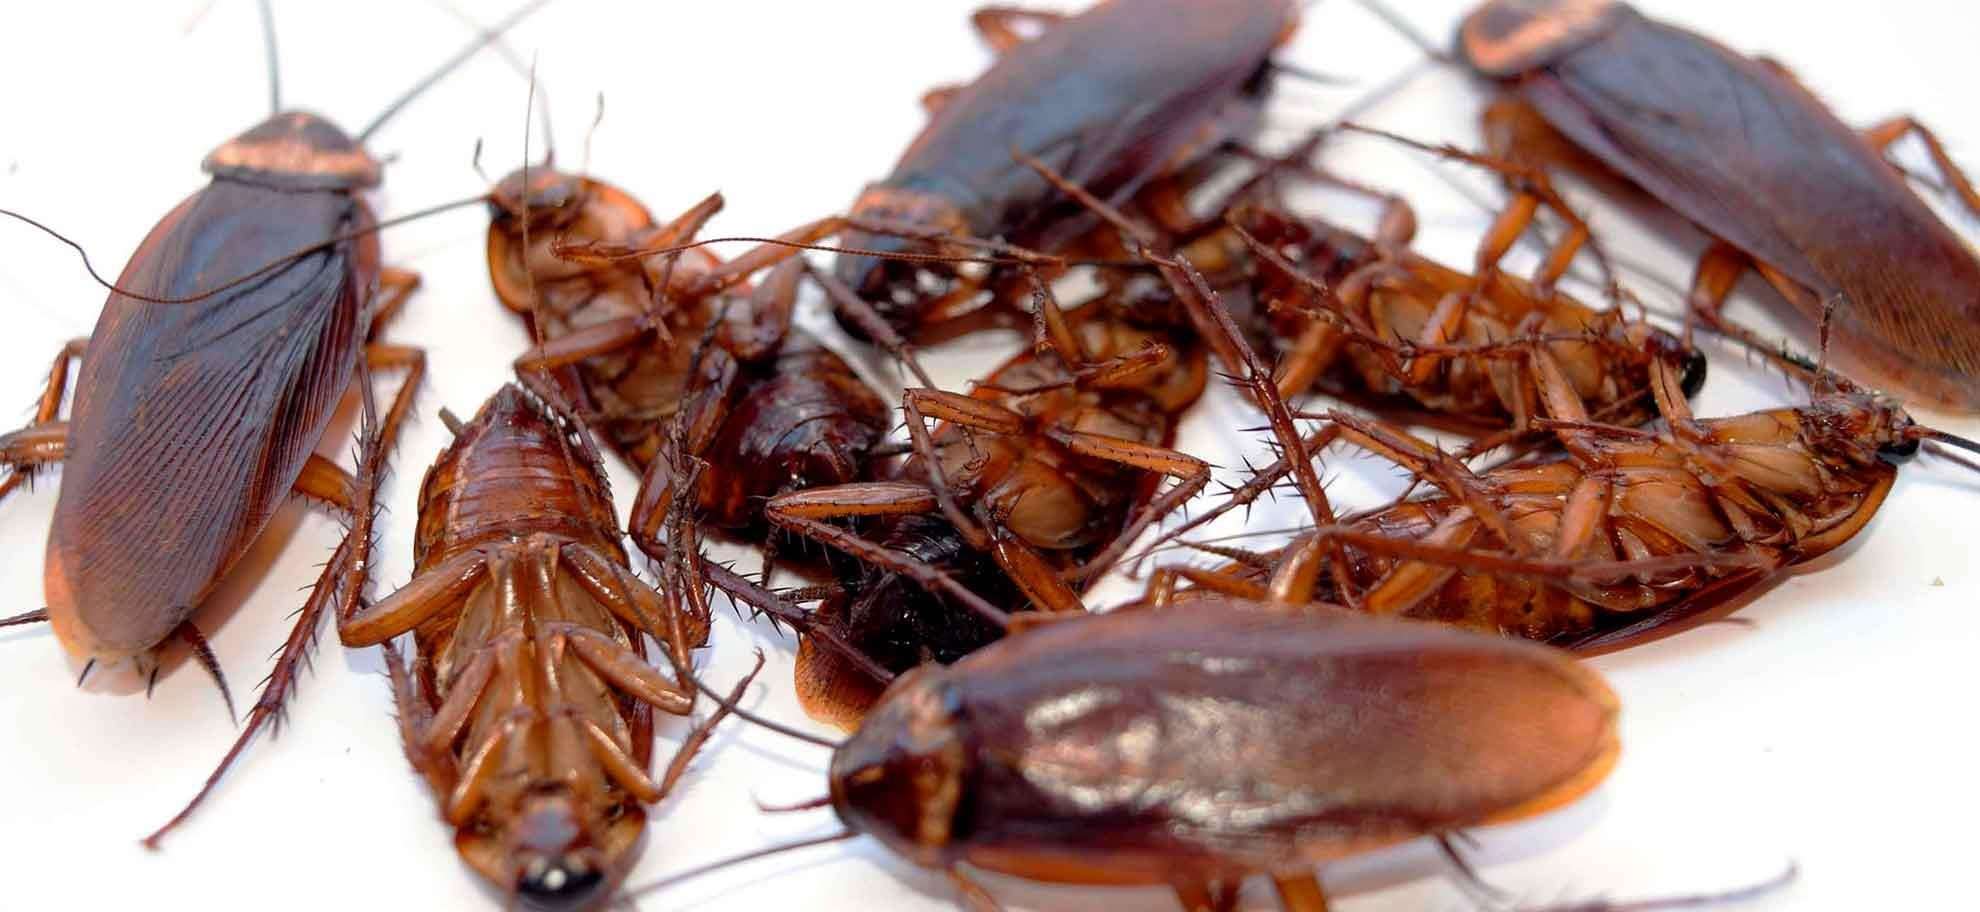 фото тараканов домашних маленьких и больших размеров